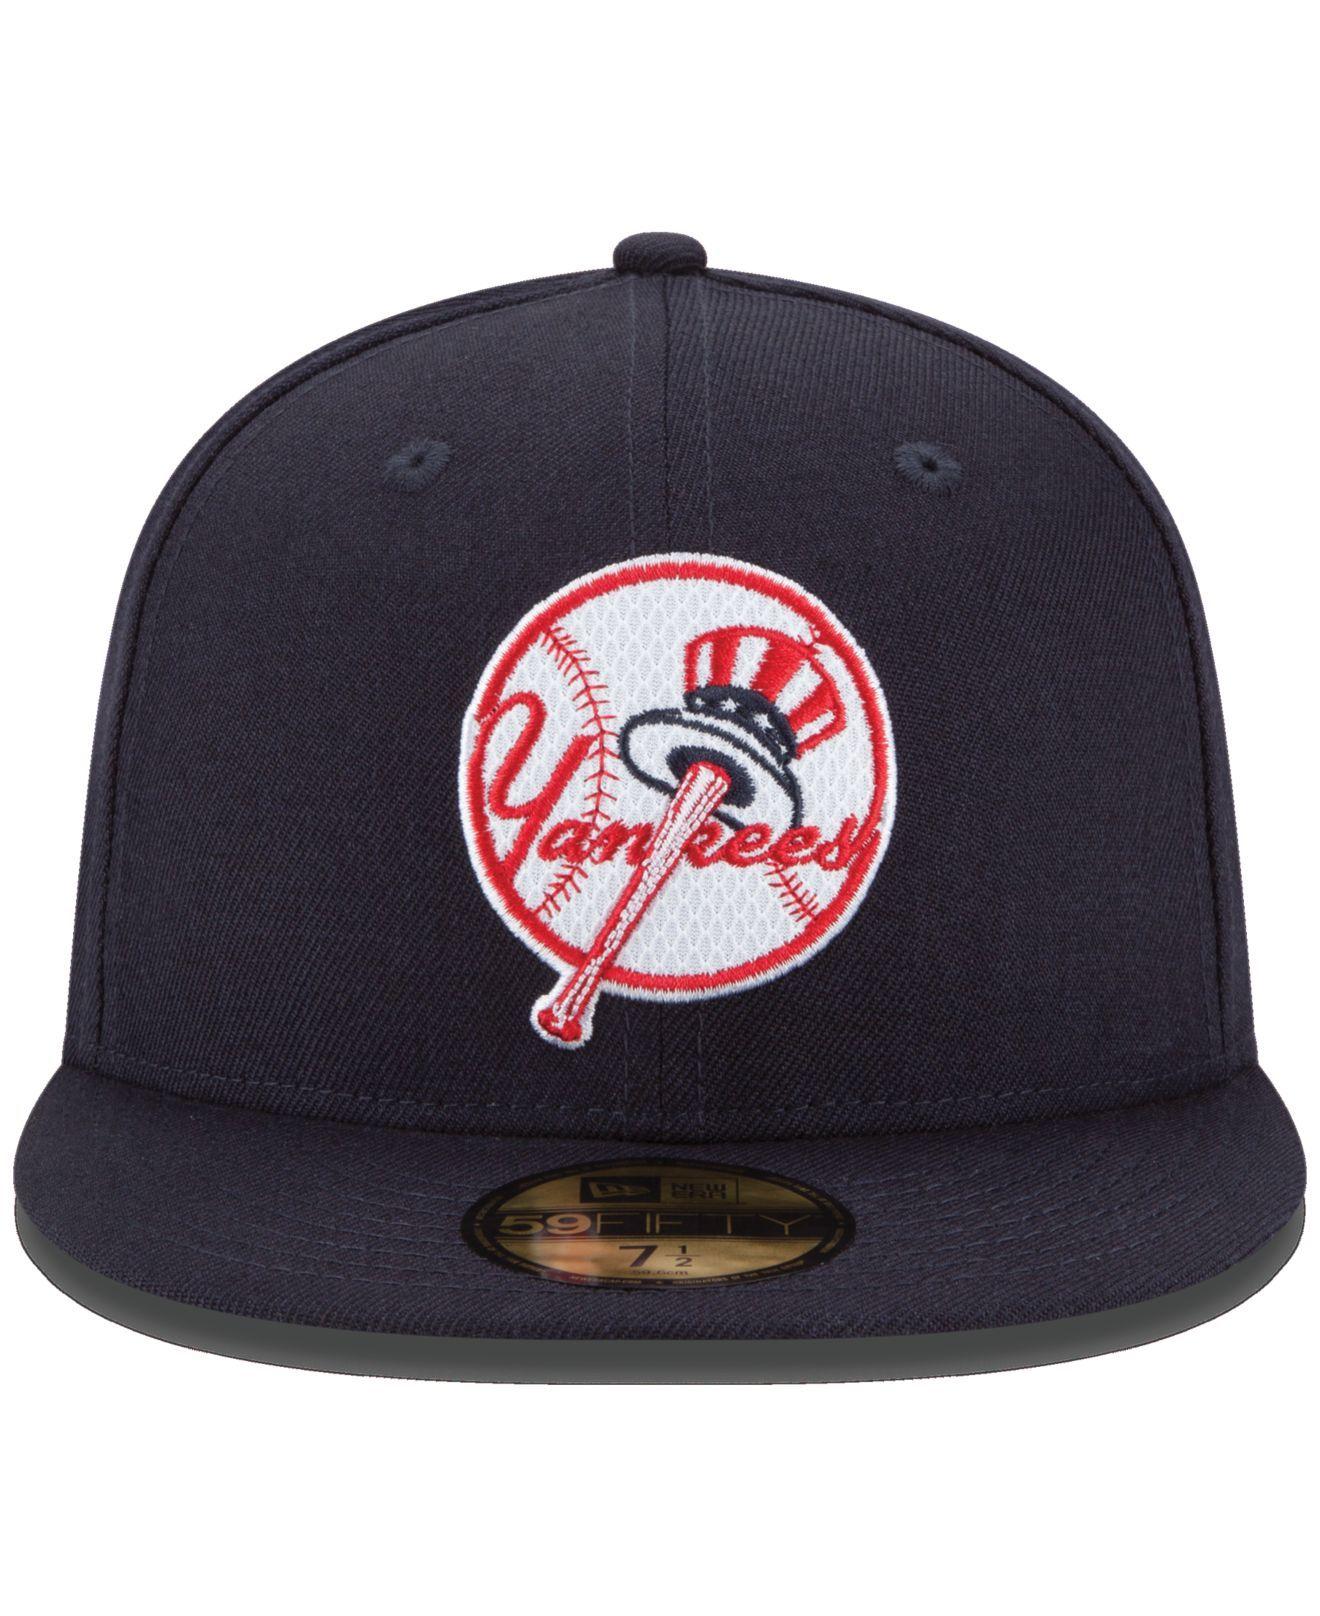 Yankees Cap Logo - cheap for discount 70d48 7d68d yankee logos hat - dissectthattech.com